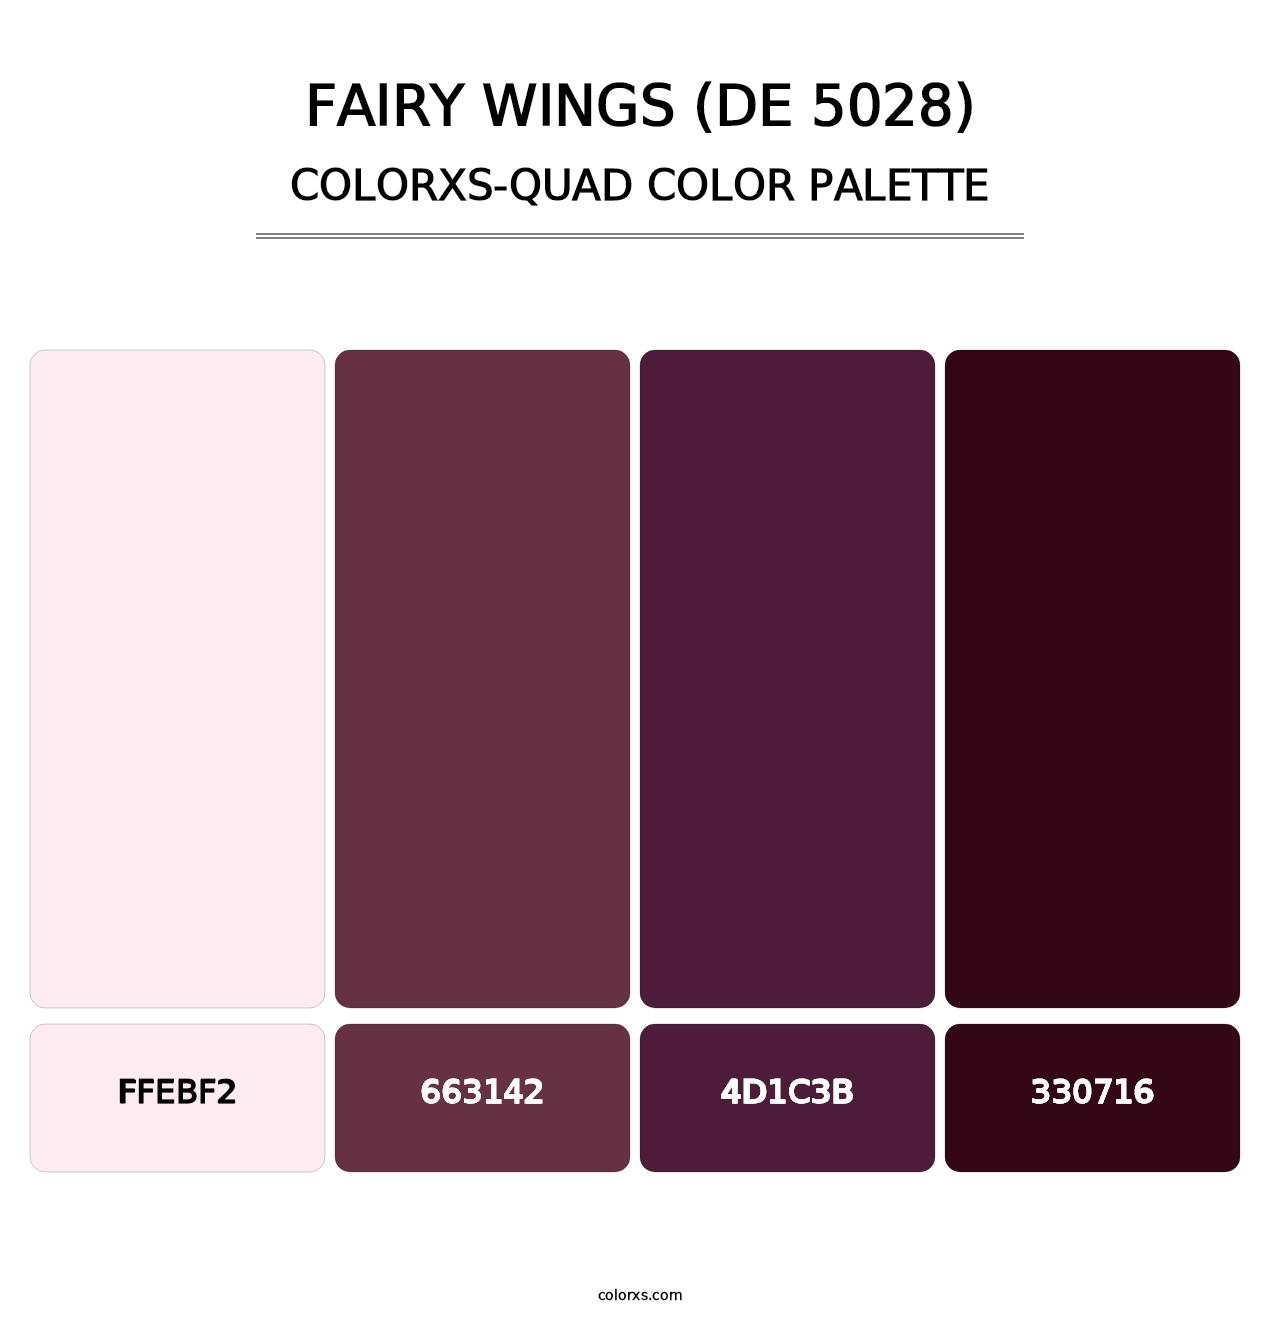 Fairy Wings (DE 5028) - Colorxs Quad Palette